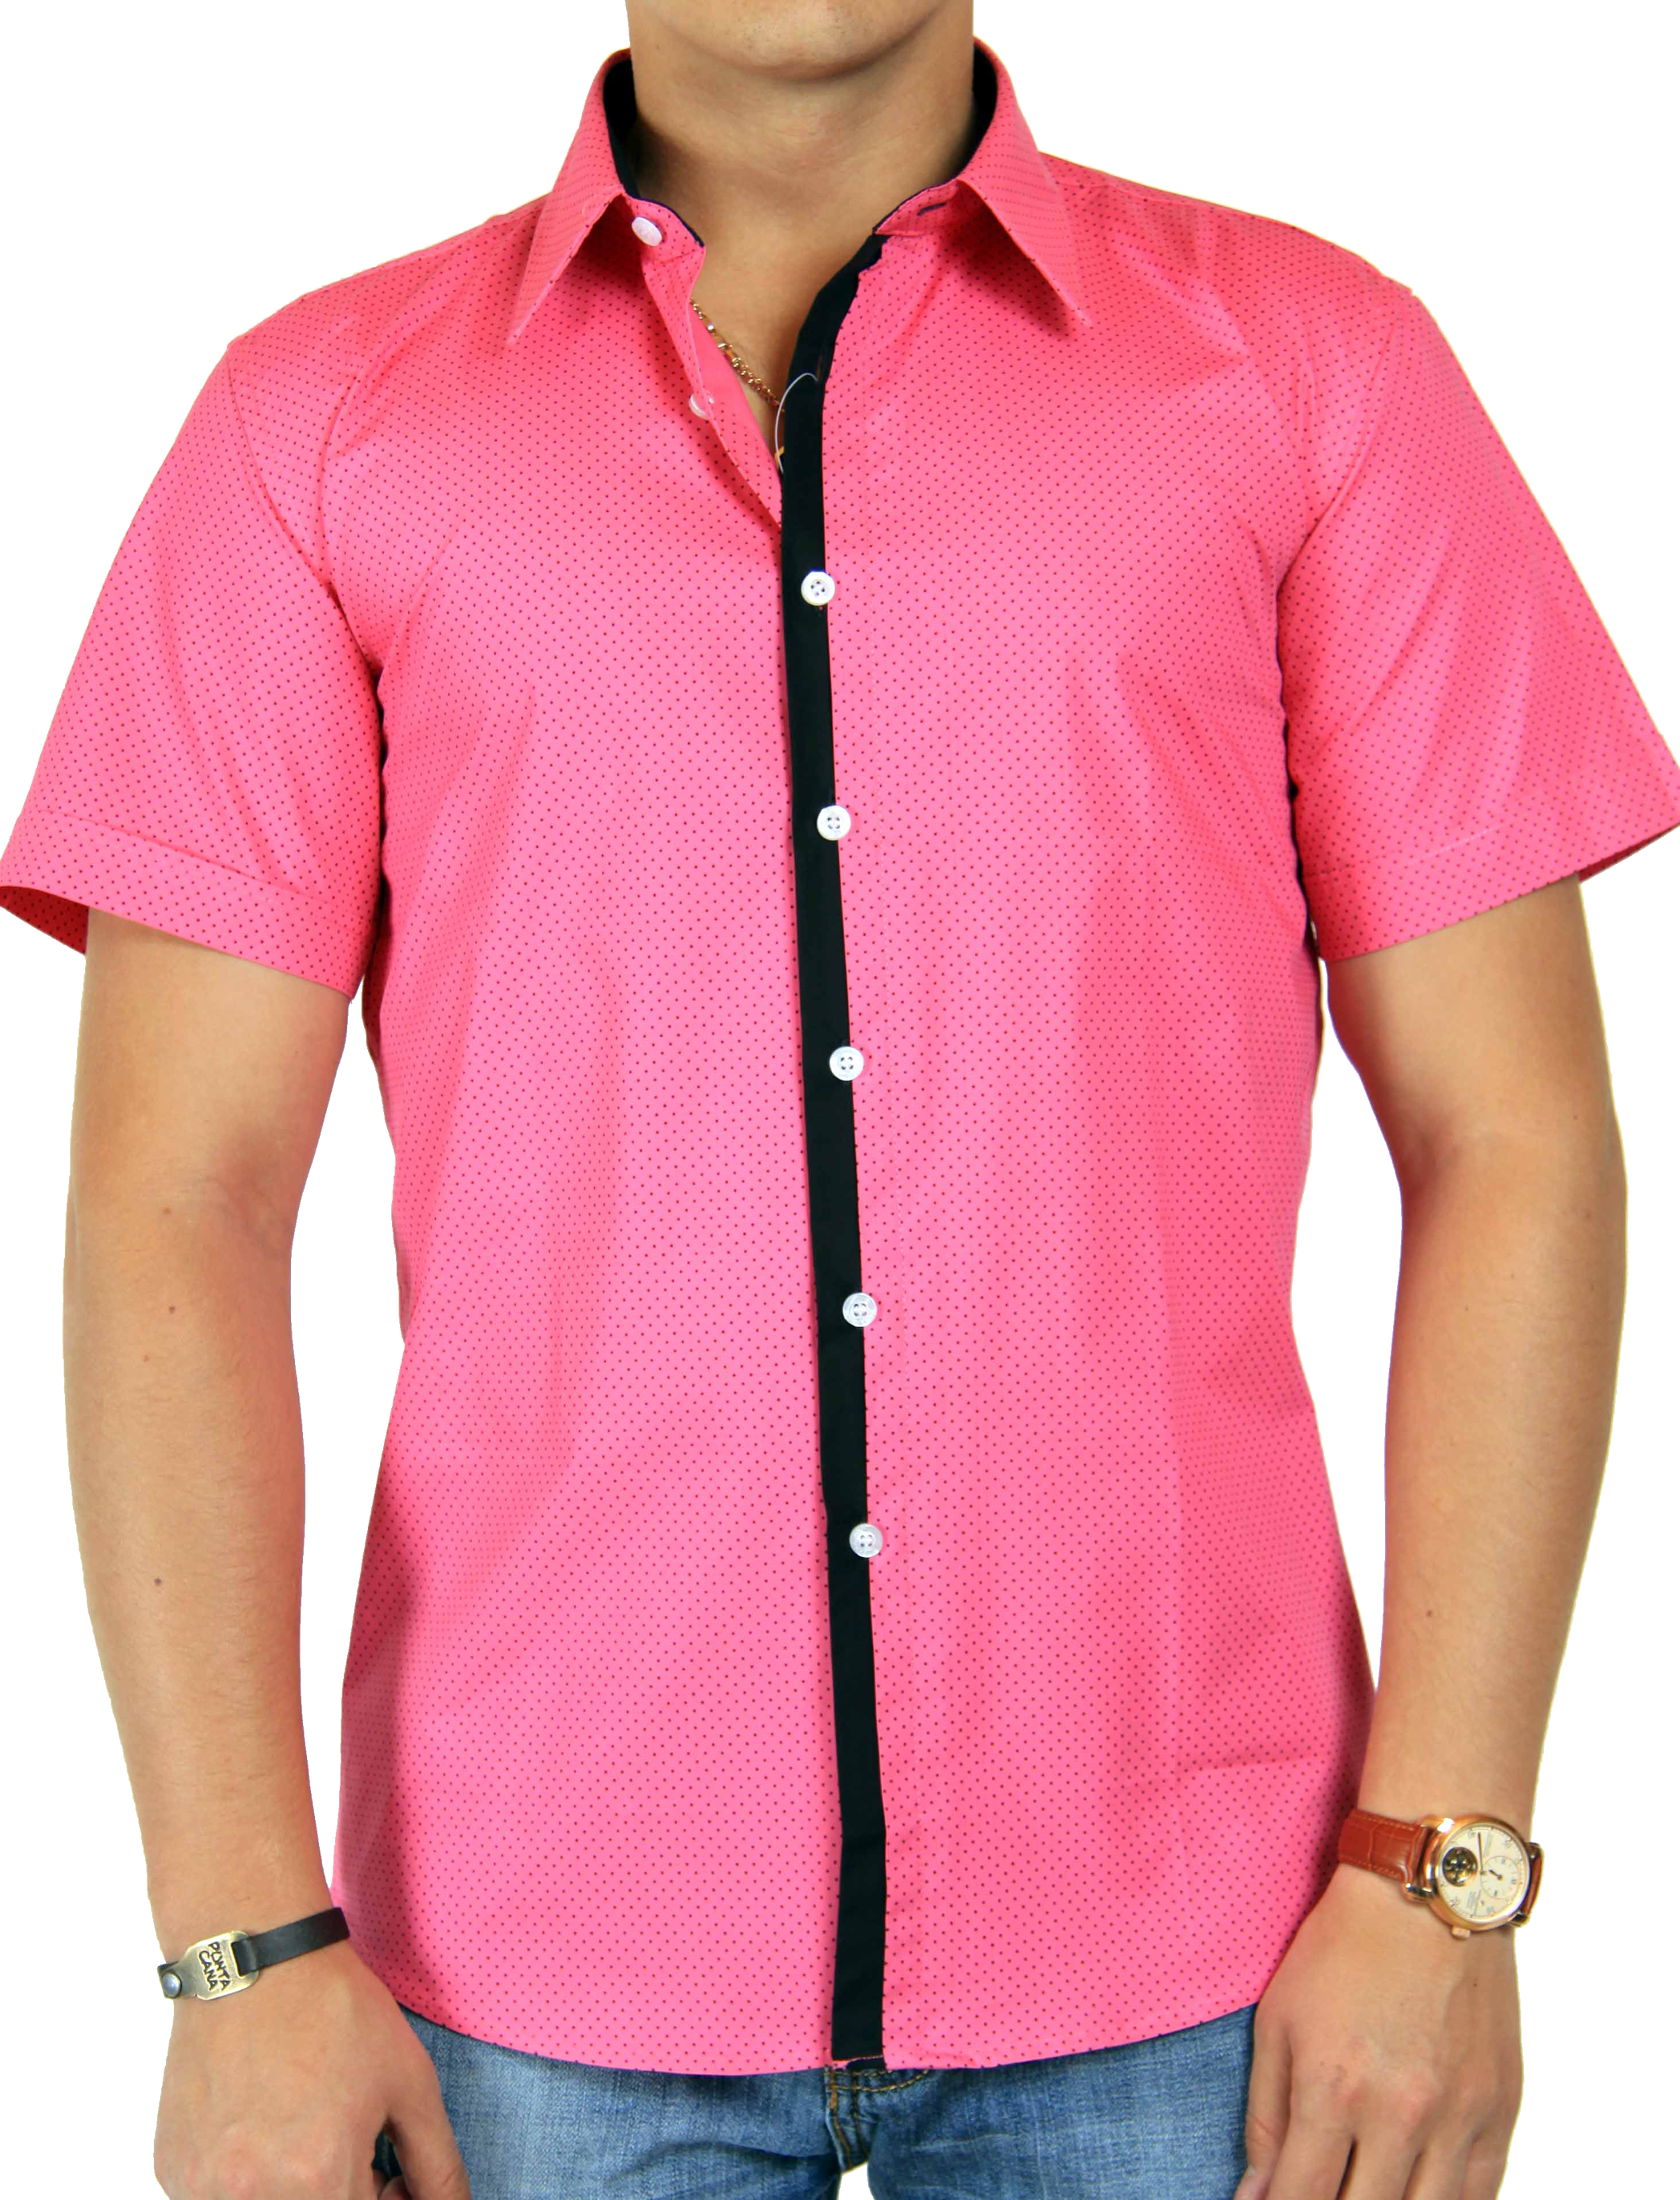 Pinkes Shirt